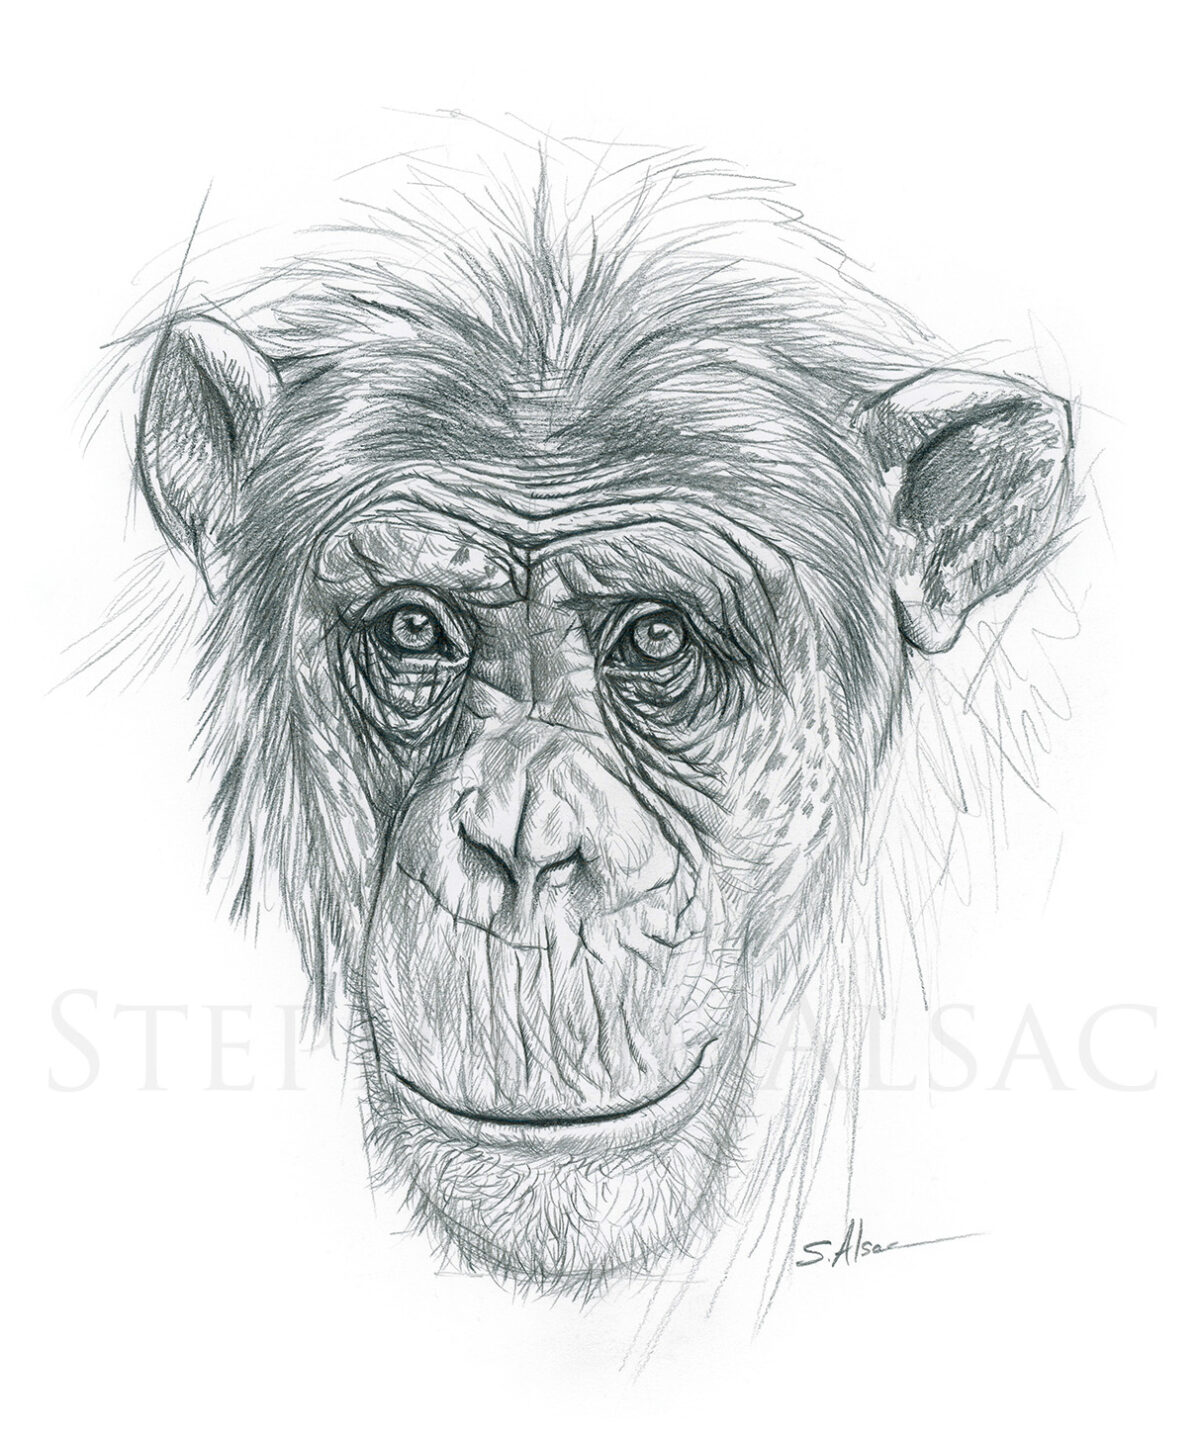 Etude de Chimpanzé - Portrait -dessin à la mine de plomb par Stéphane Alsac